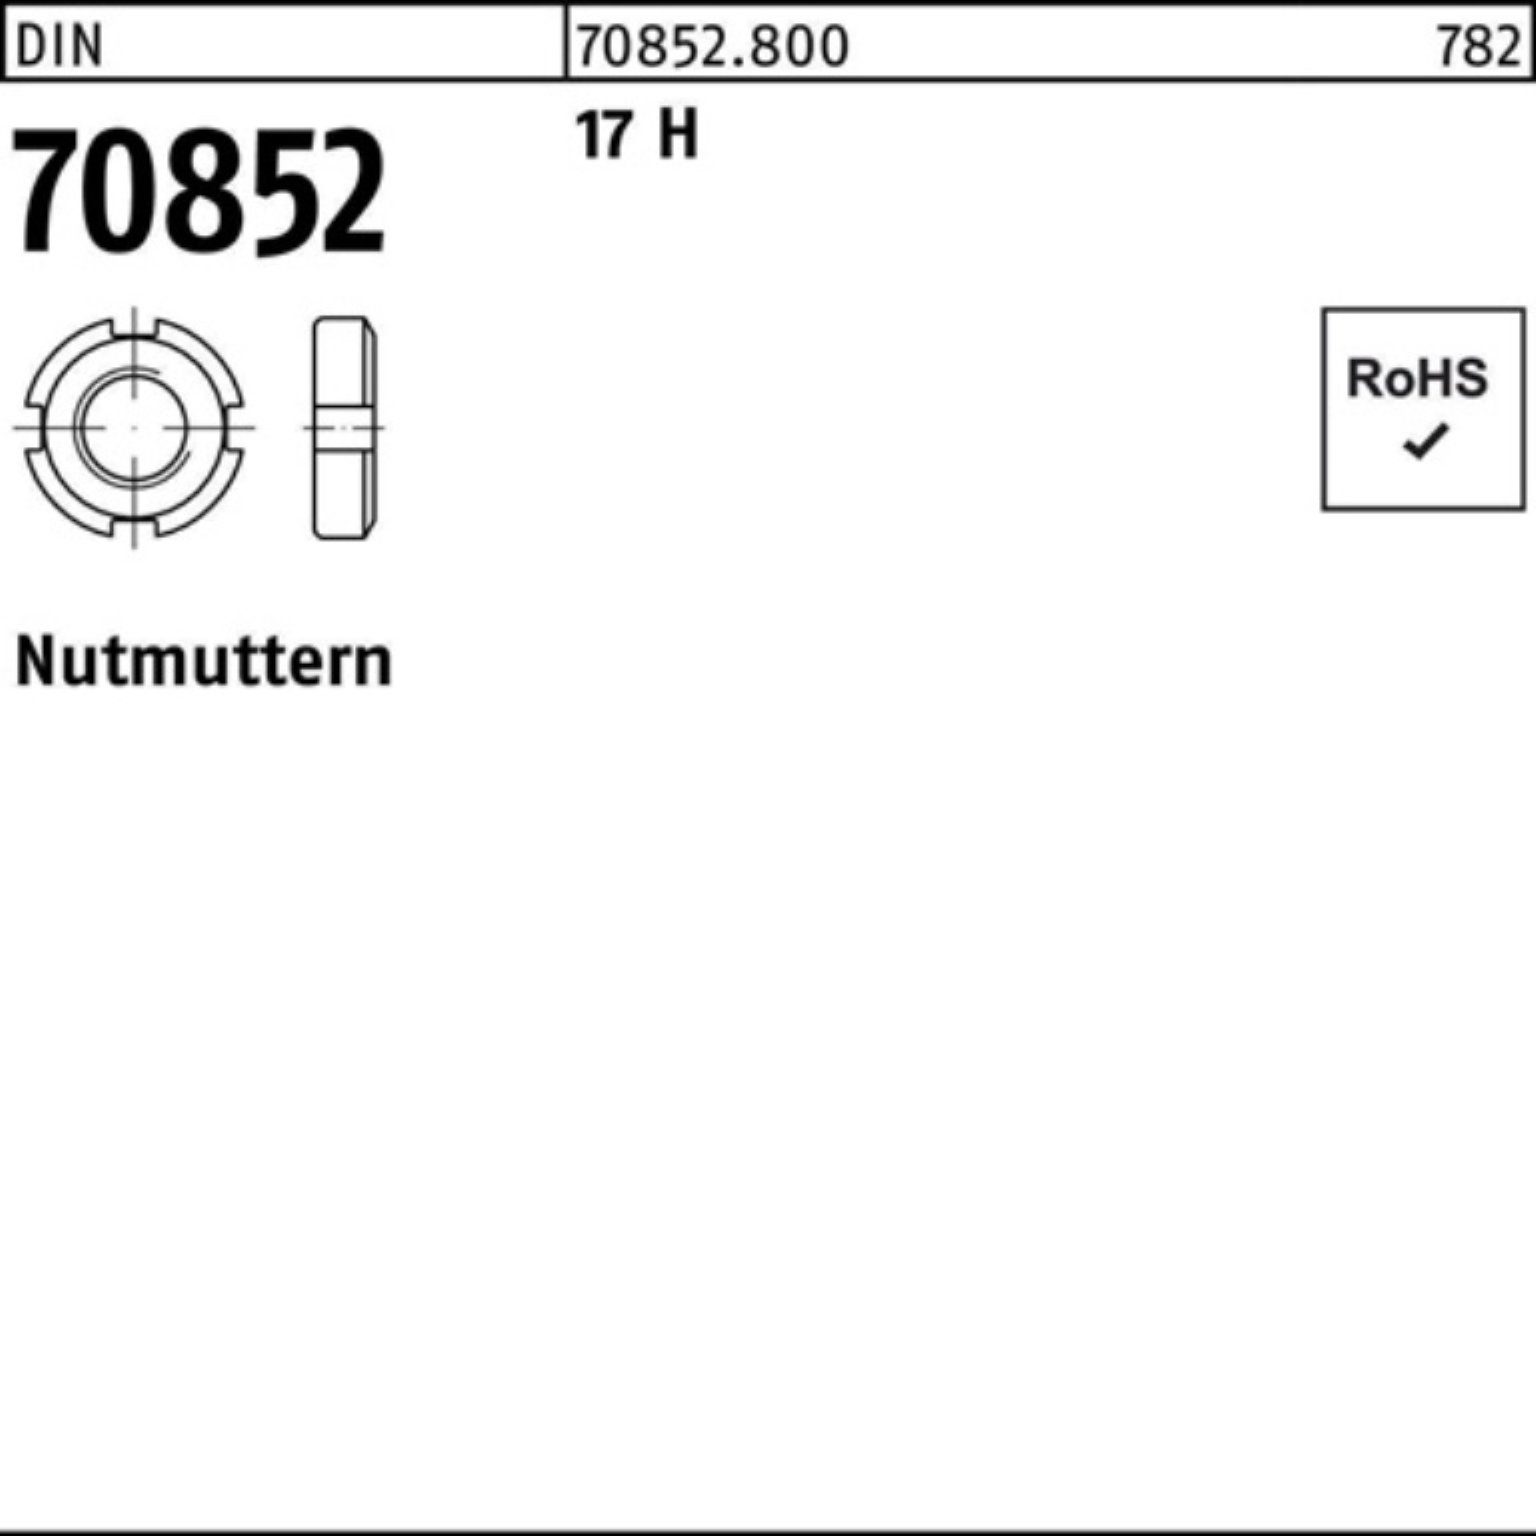 DIN DIN 17 M32x Pack Nutmutter 1 100er Reyher 70852 H 17 H 1,5 N Nutmutter 70852 Stück